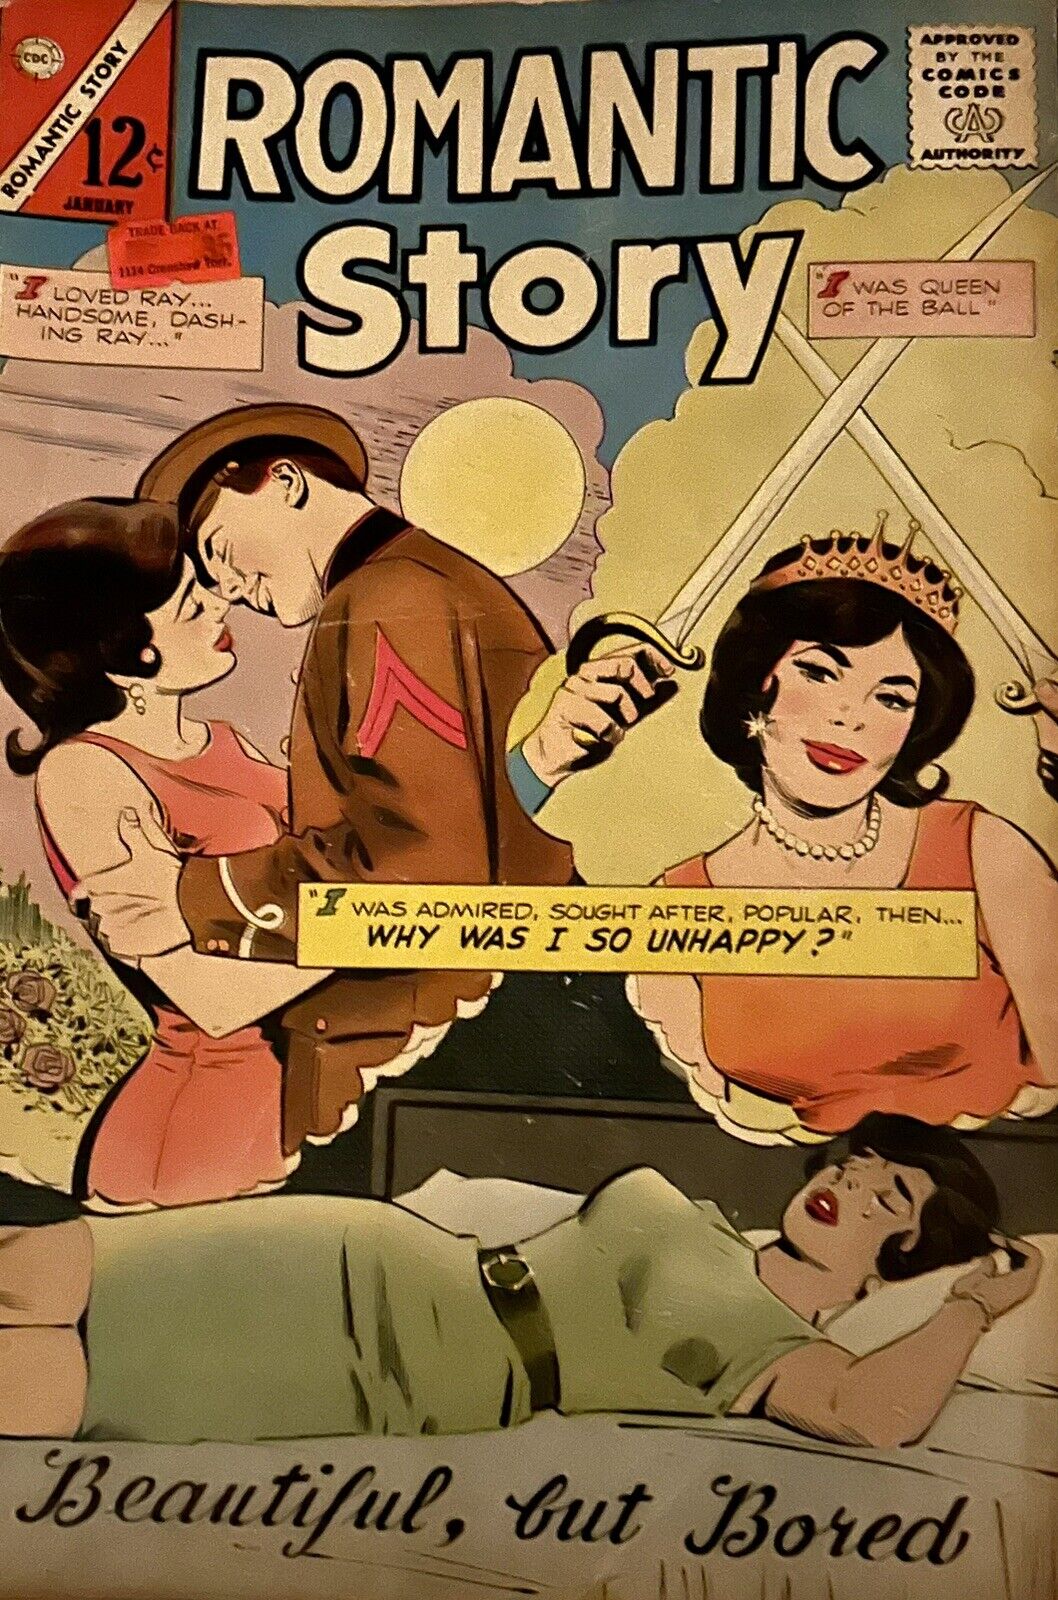 Romantic Story Beautiful, But Bored (January 1965) Comic